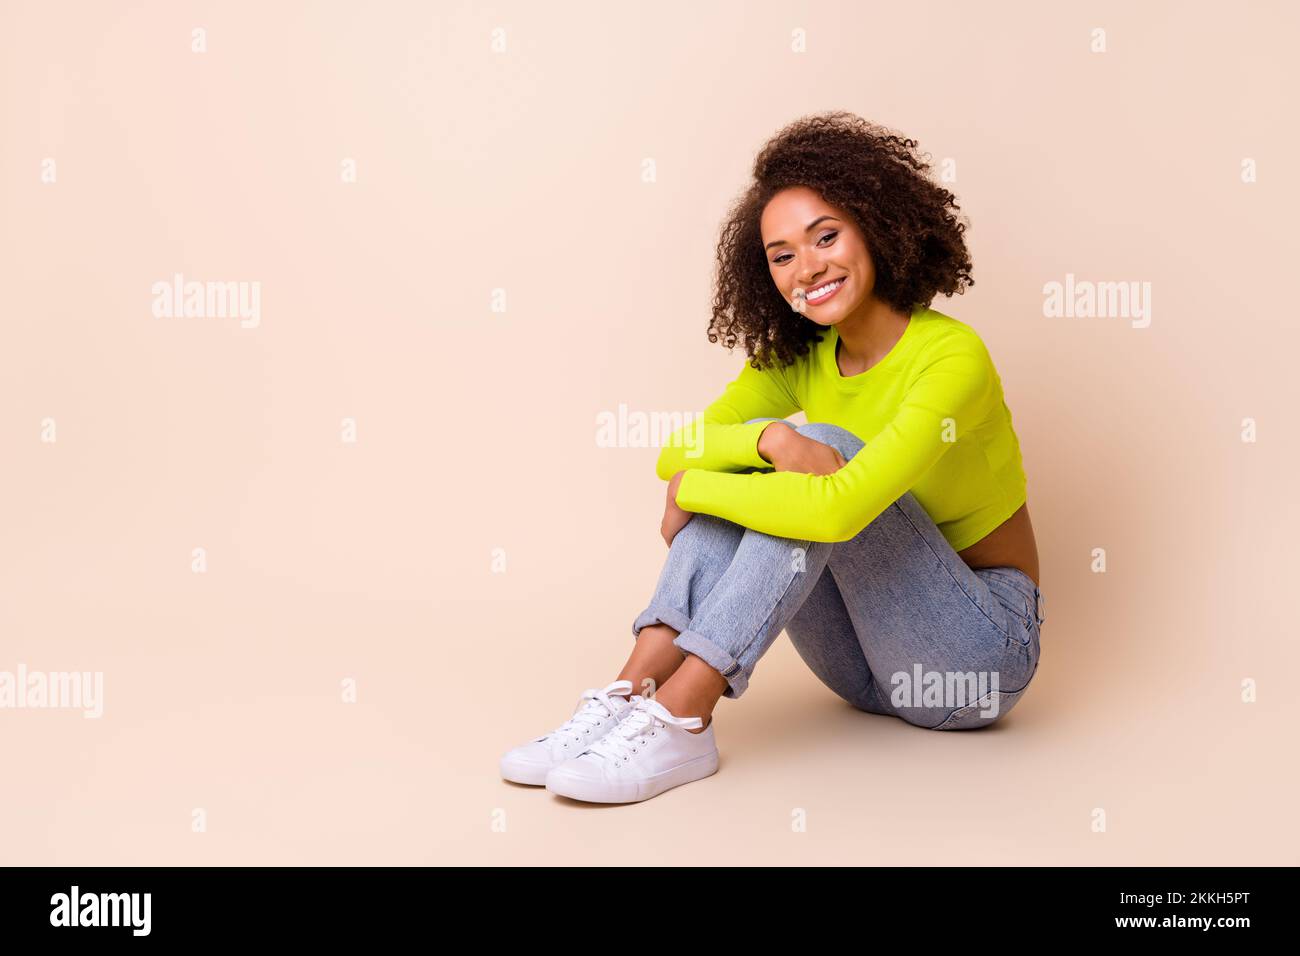 Ganzkörperfoto eines netten jungen Mädchens wellenförmiges Haar Sitz Boden Knie umarmen Zahnfleisch Lächeln Tragen Sie trendiges gelbes Outfit isoliert auf beigefarbenem Hintergrund Stockfoto